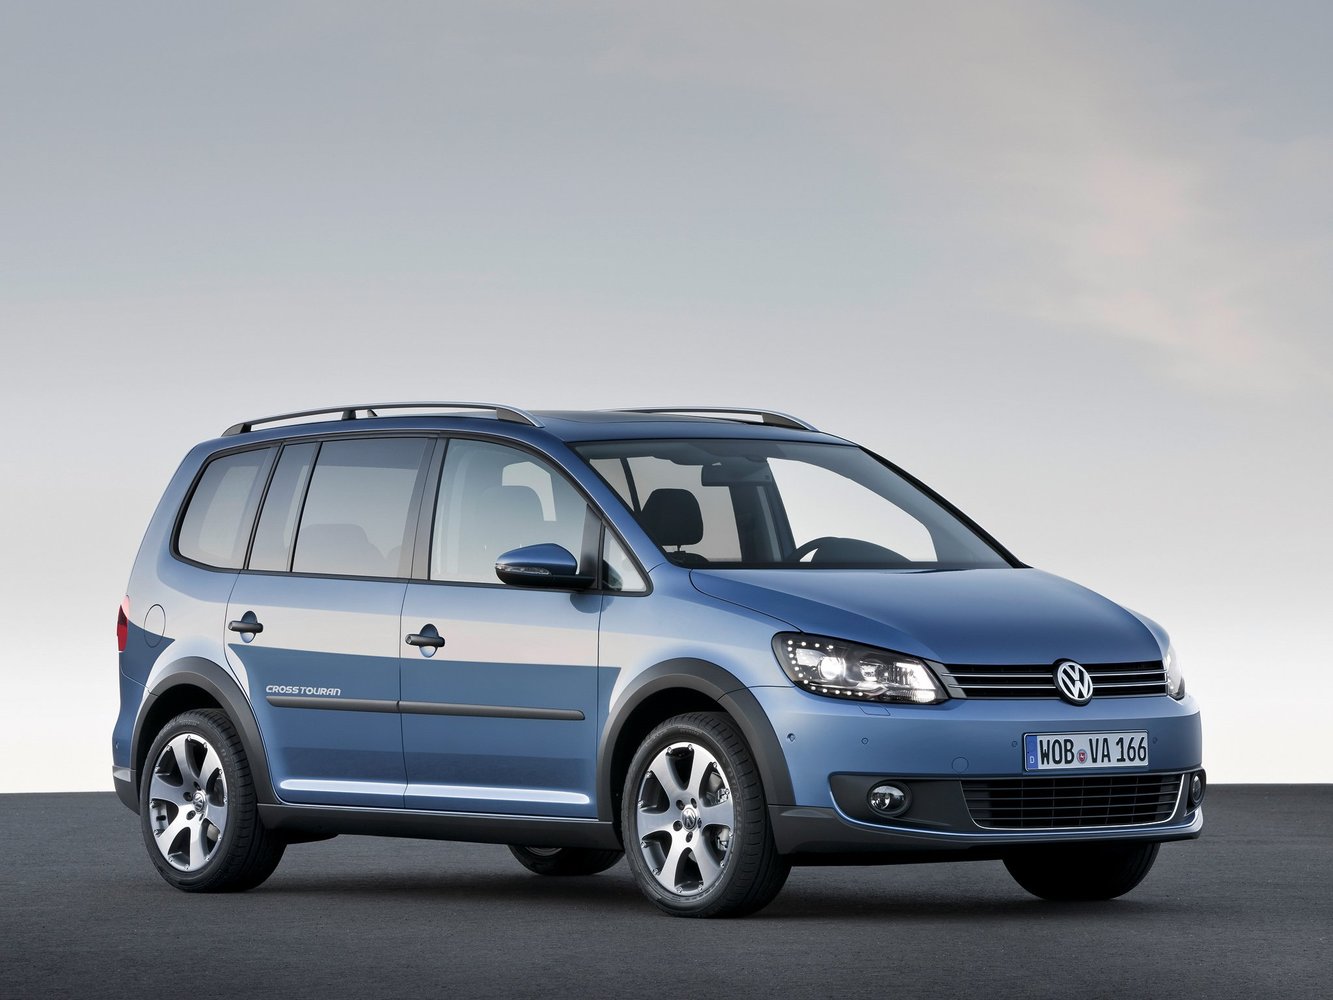 Volkswagen Touran 2010 - 2015